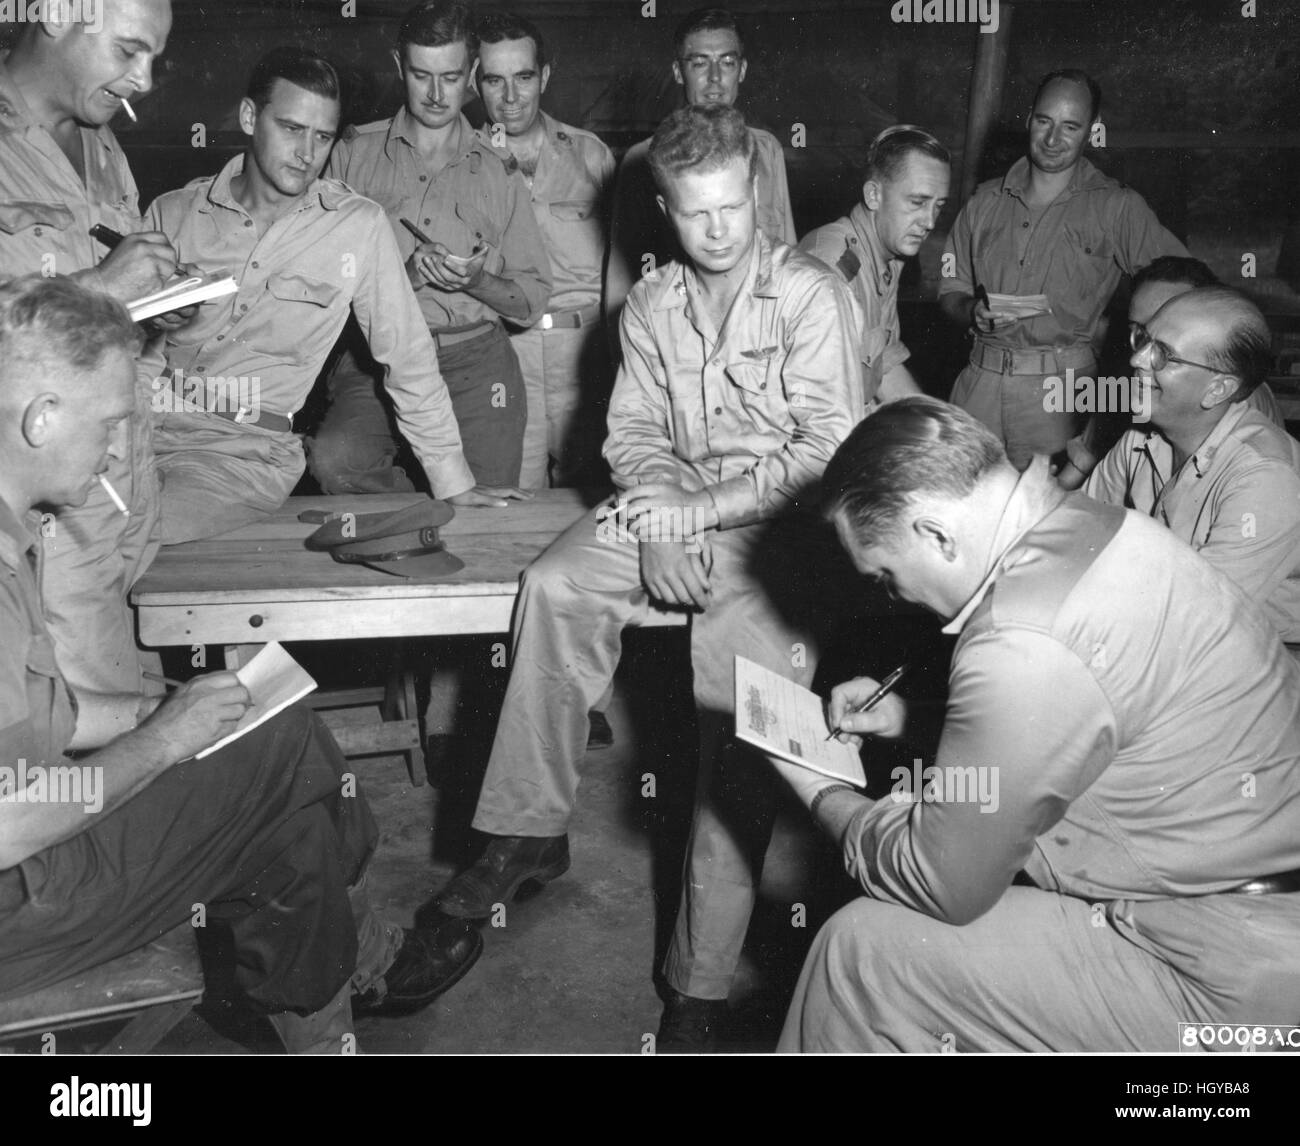 Principali Richard I. Bong, un 5° Fighter Command pilota dal pioppo, Wisc, è stato intervistato dalla Allied premere. Principali Bong, un Lockheed P-38 pilota, abbattuto 27 aerei giapponesi. Foto Stock